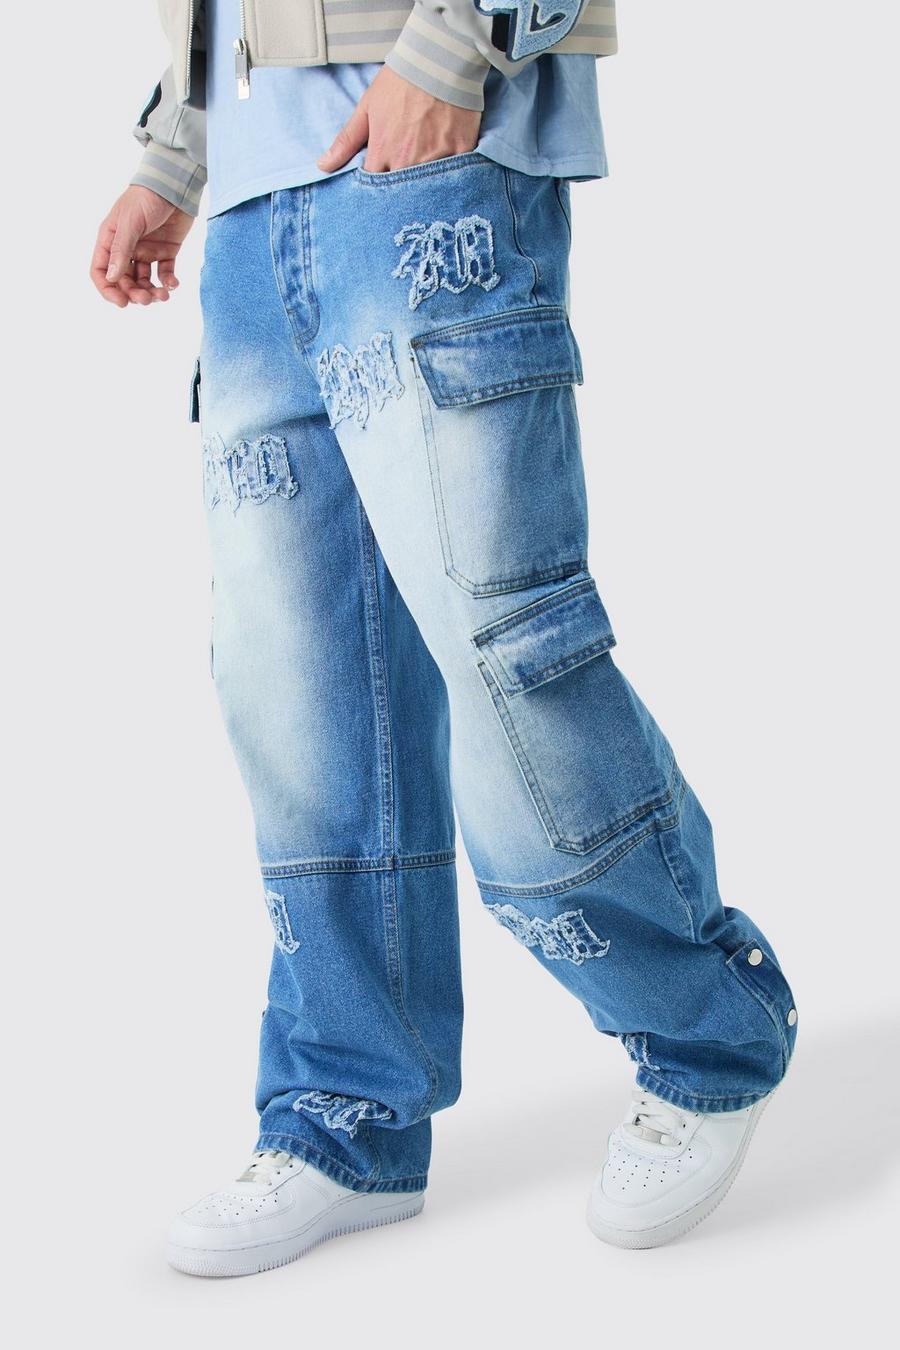 Lockere Cargo-Jeans mit Bm-Applikation und Taschen, Light blue